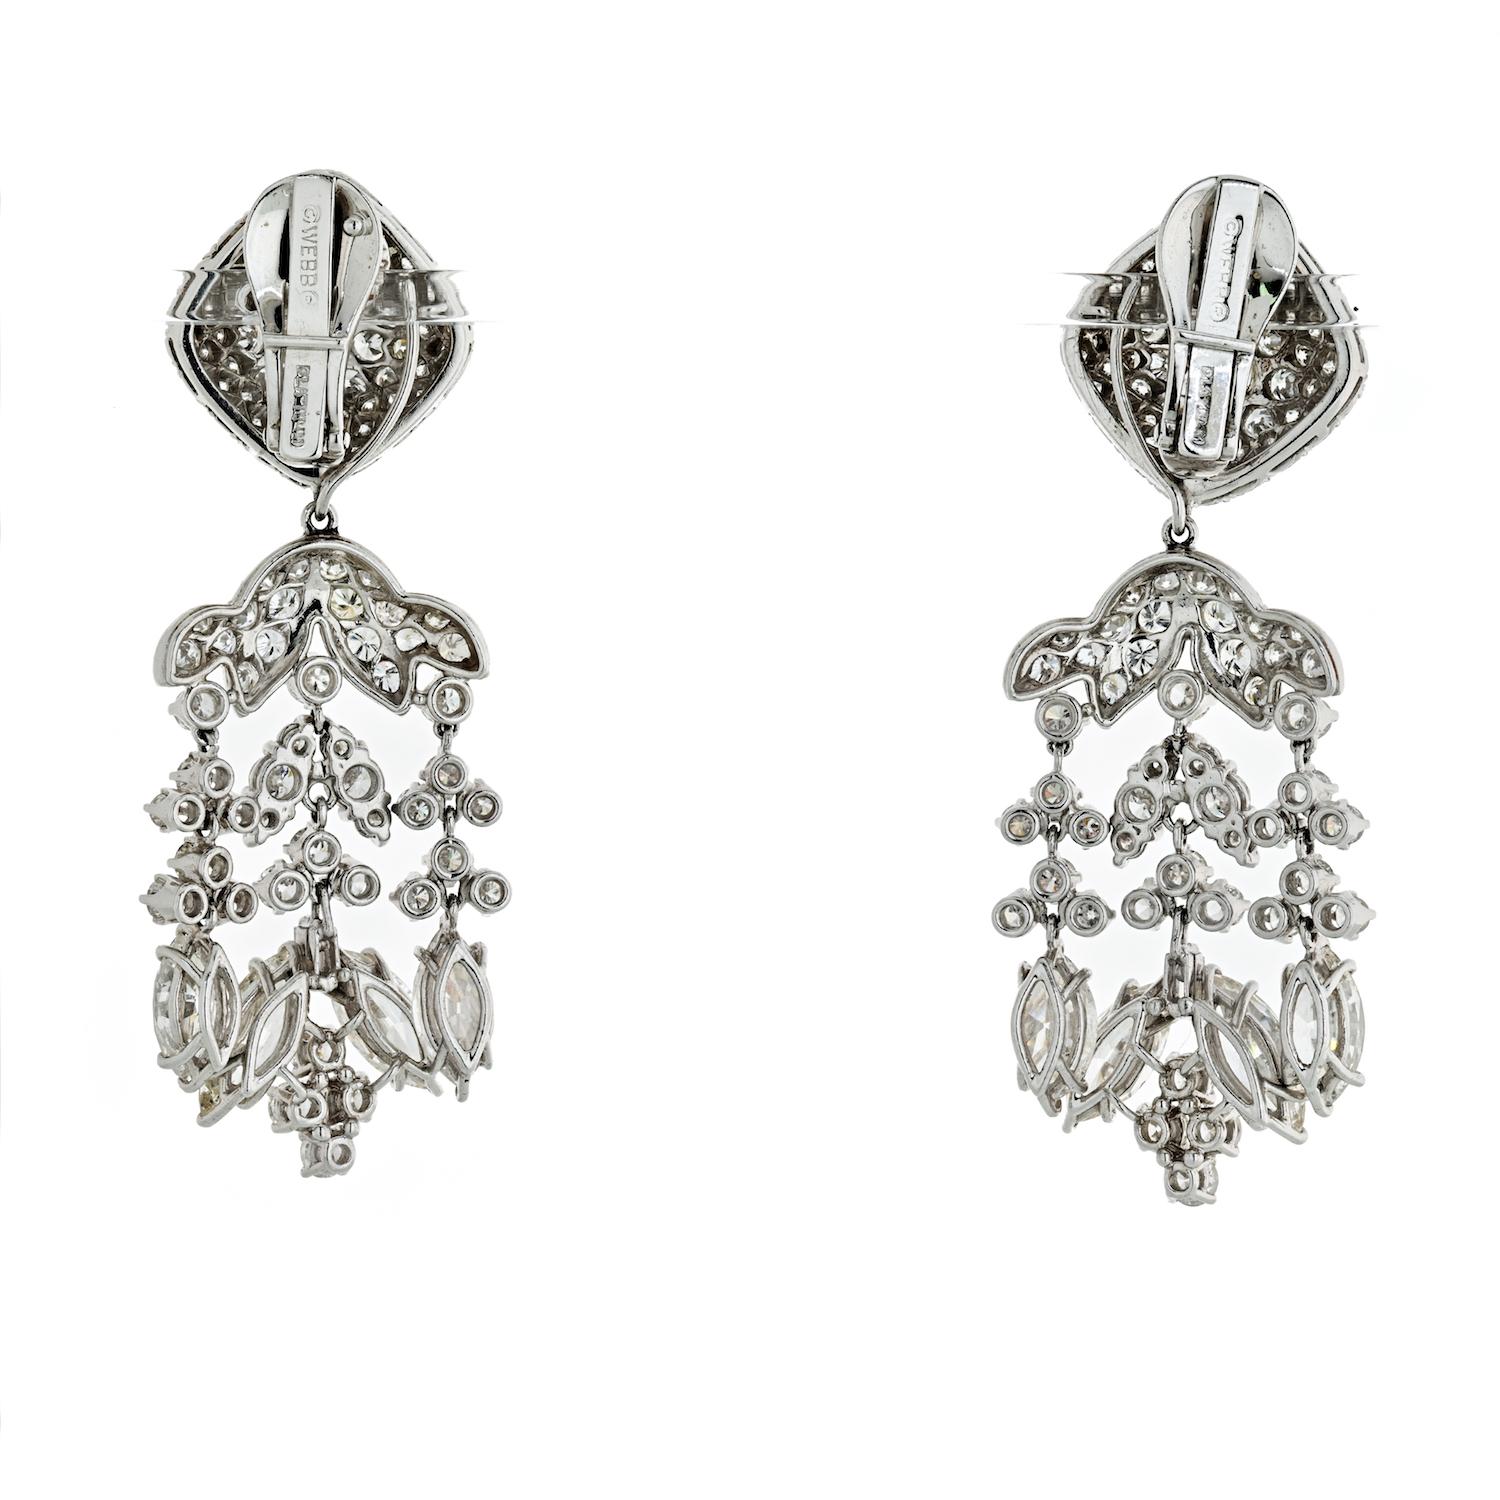 Ein Paar amerikanische Platin-Kronleuchter-Ohrringe des 20. Jahrhunderts mit über 20 Karat Diamanten von David Webb. Die gegliederten Ohrringe haben Diamanten im Marquise-, Rund- und Baguetteschliff mit einem ungefähren Gesamtgewicht von 20,17